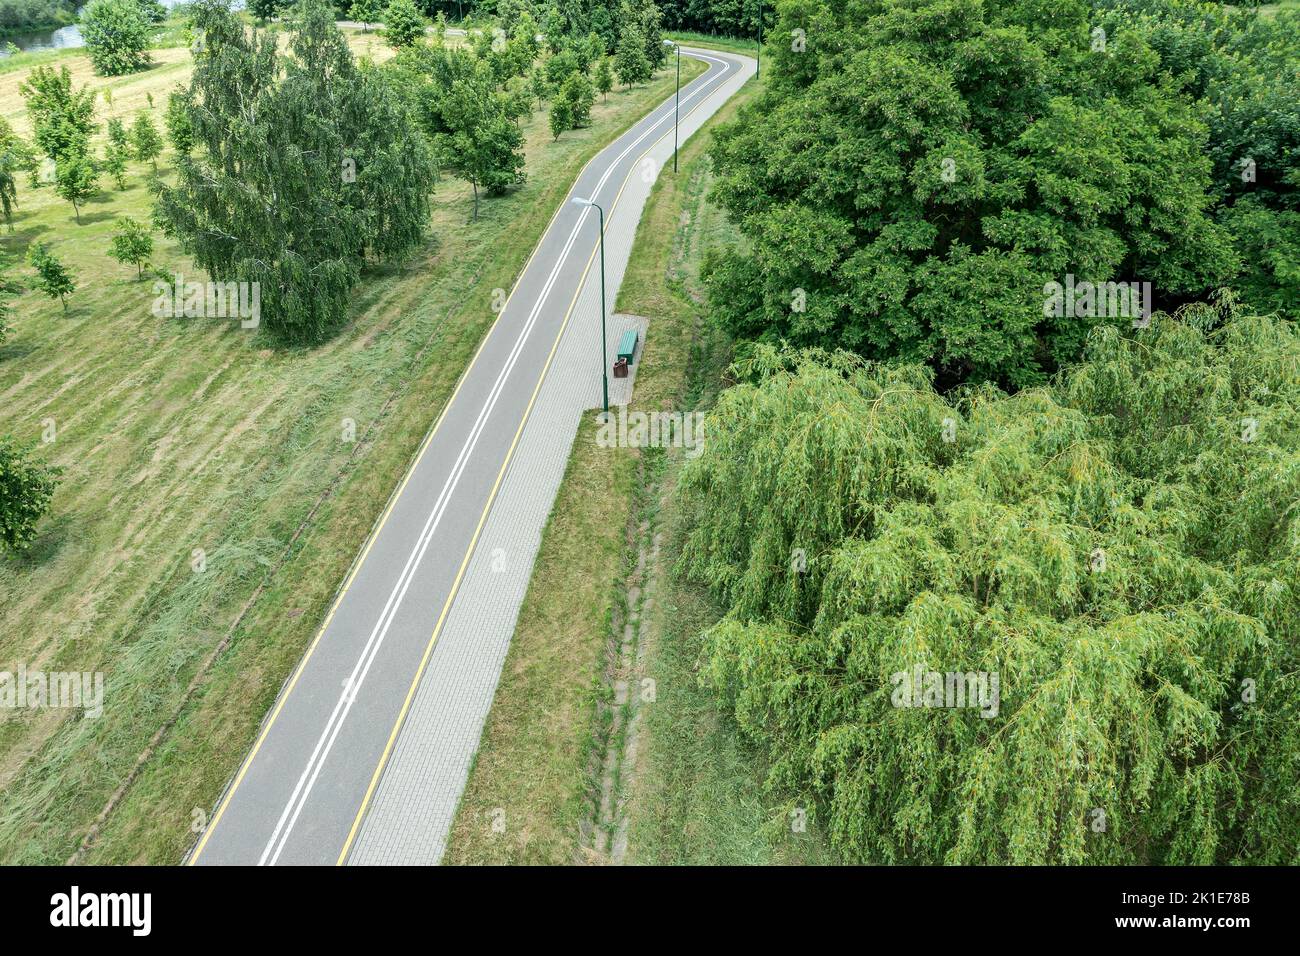 carril bici con sendero en parque de verano. paisaje con árboles verdes. vista aérea del drone. Foto de stock